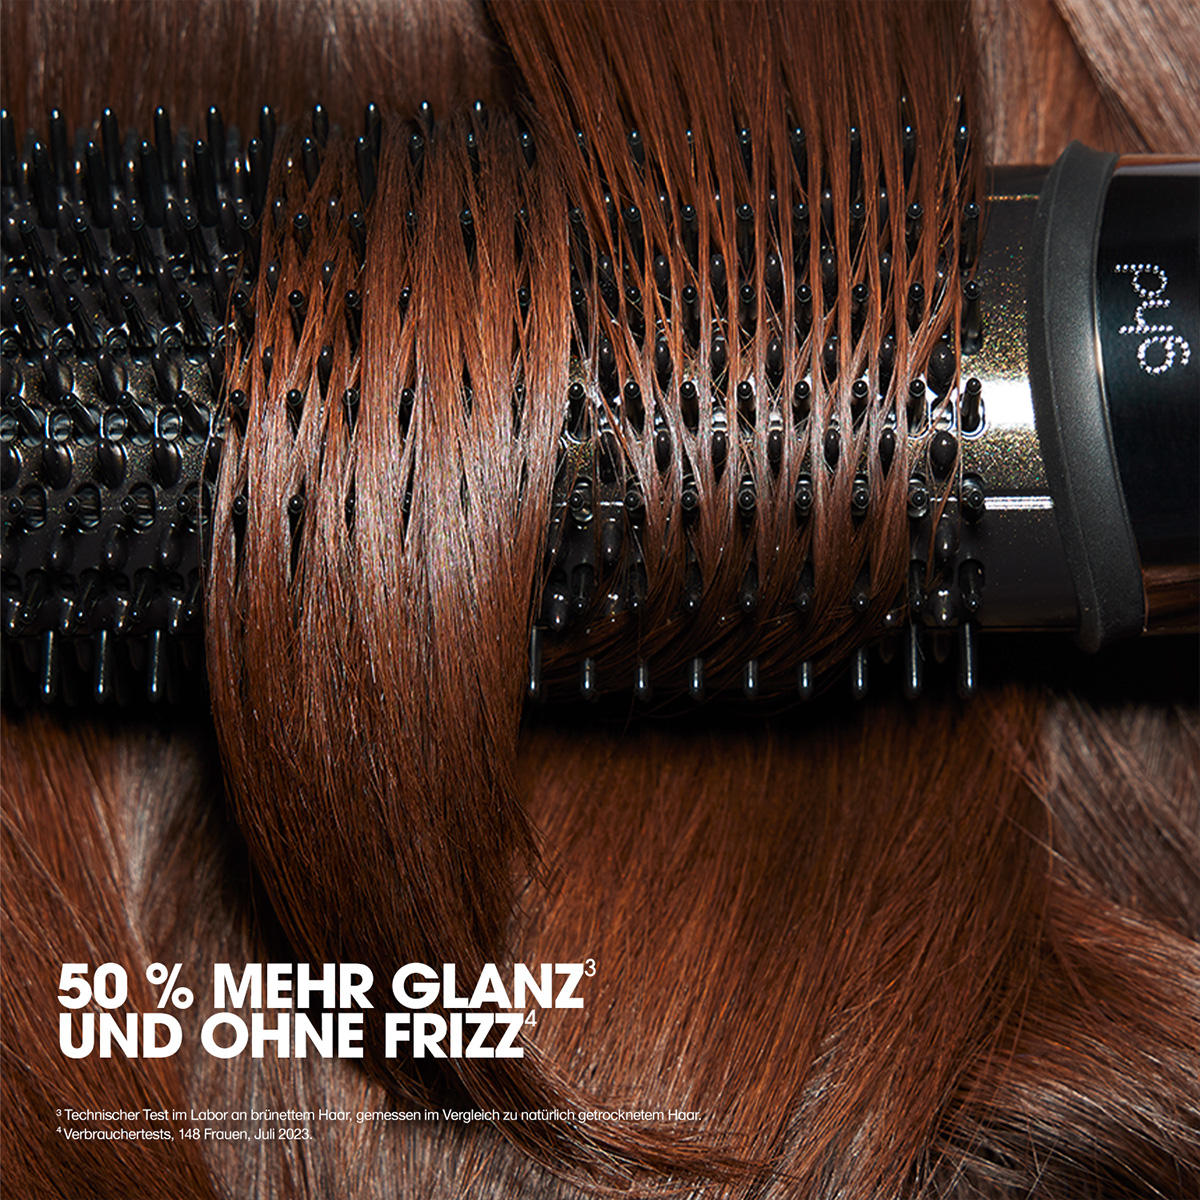 ghd duet blowdry Hair Dryer Brush negro - 4